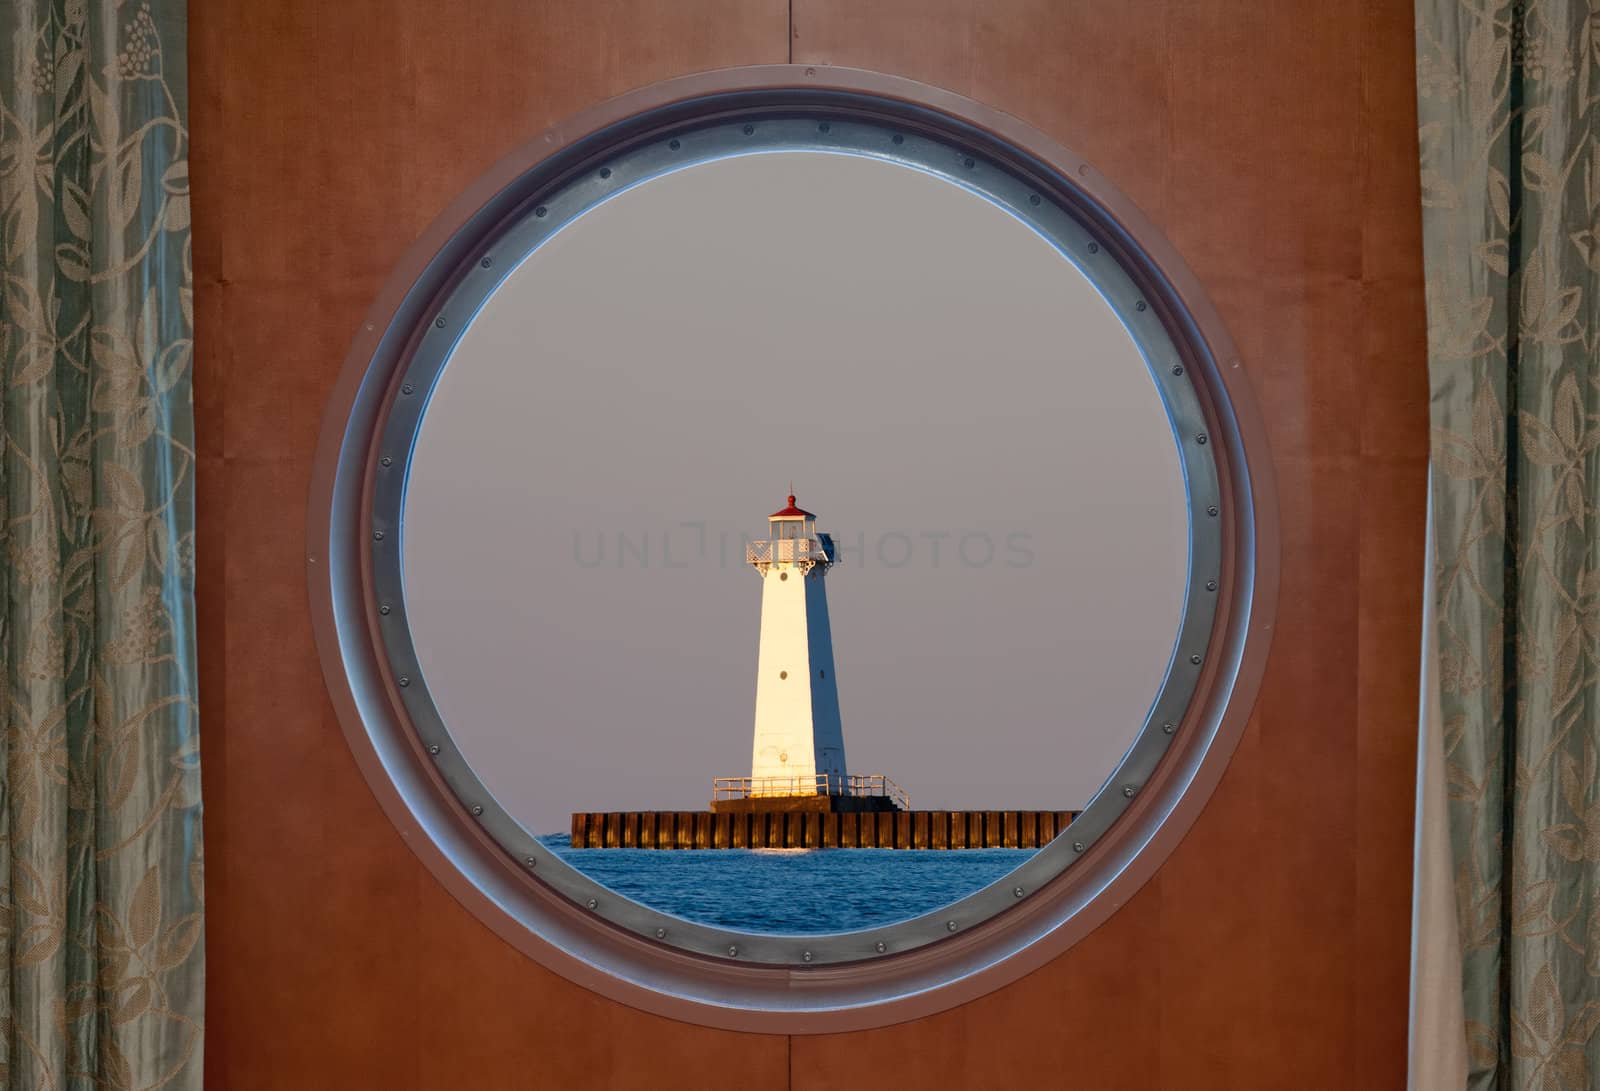 Sodus Bay Lighthouse on Lake Ontario as seen through a porthole. 